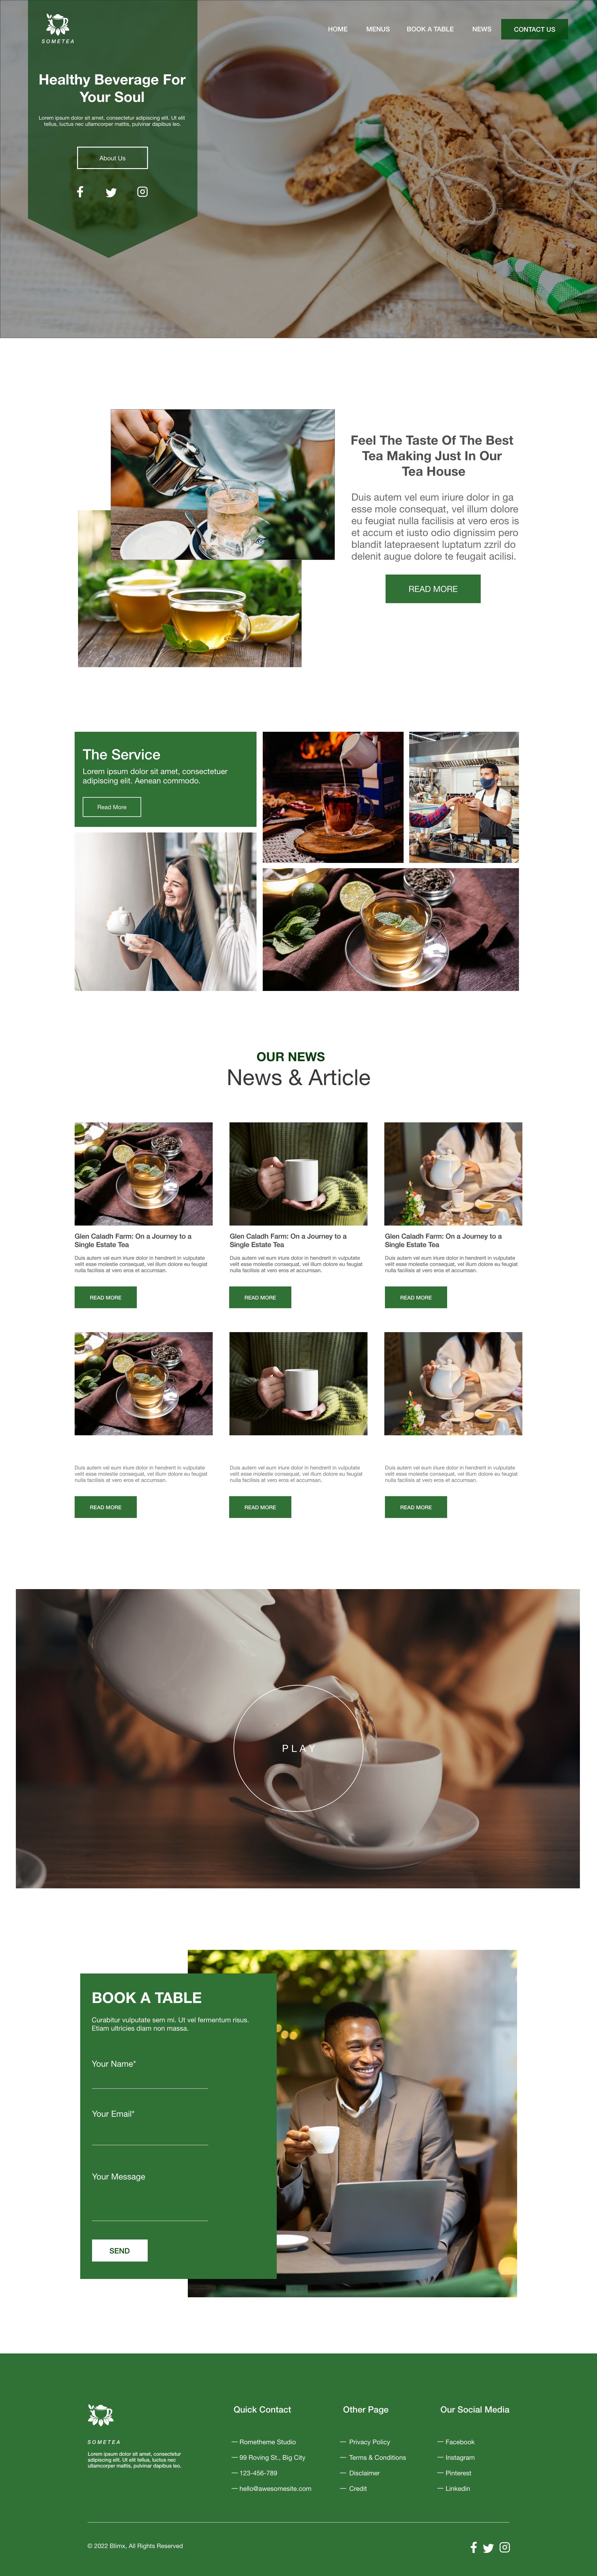 Drink Tea Website Design